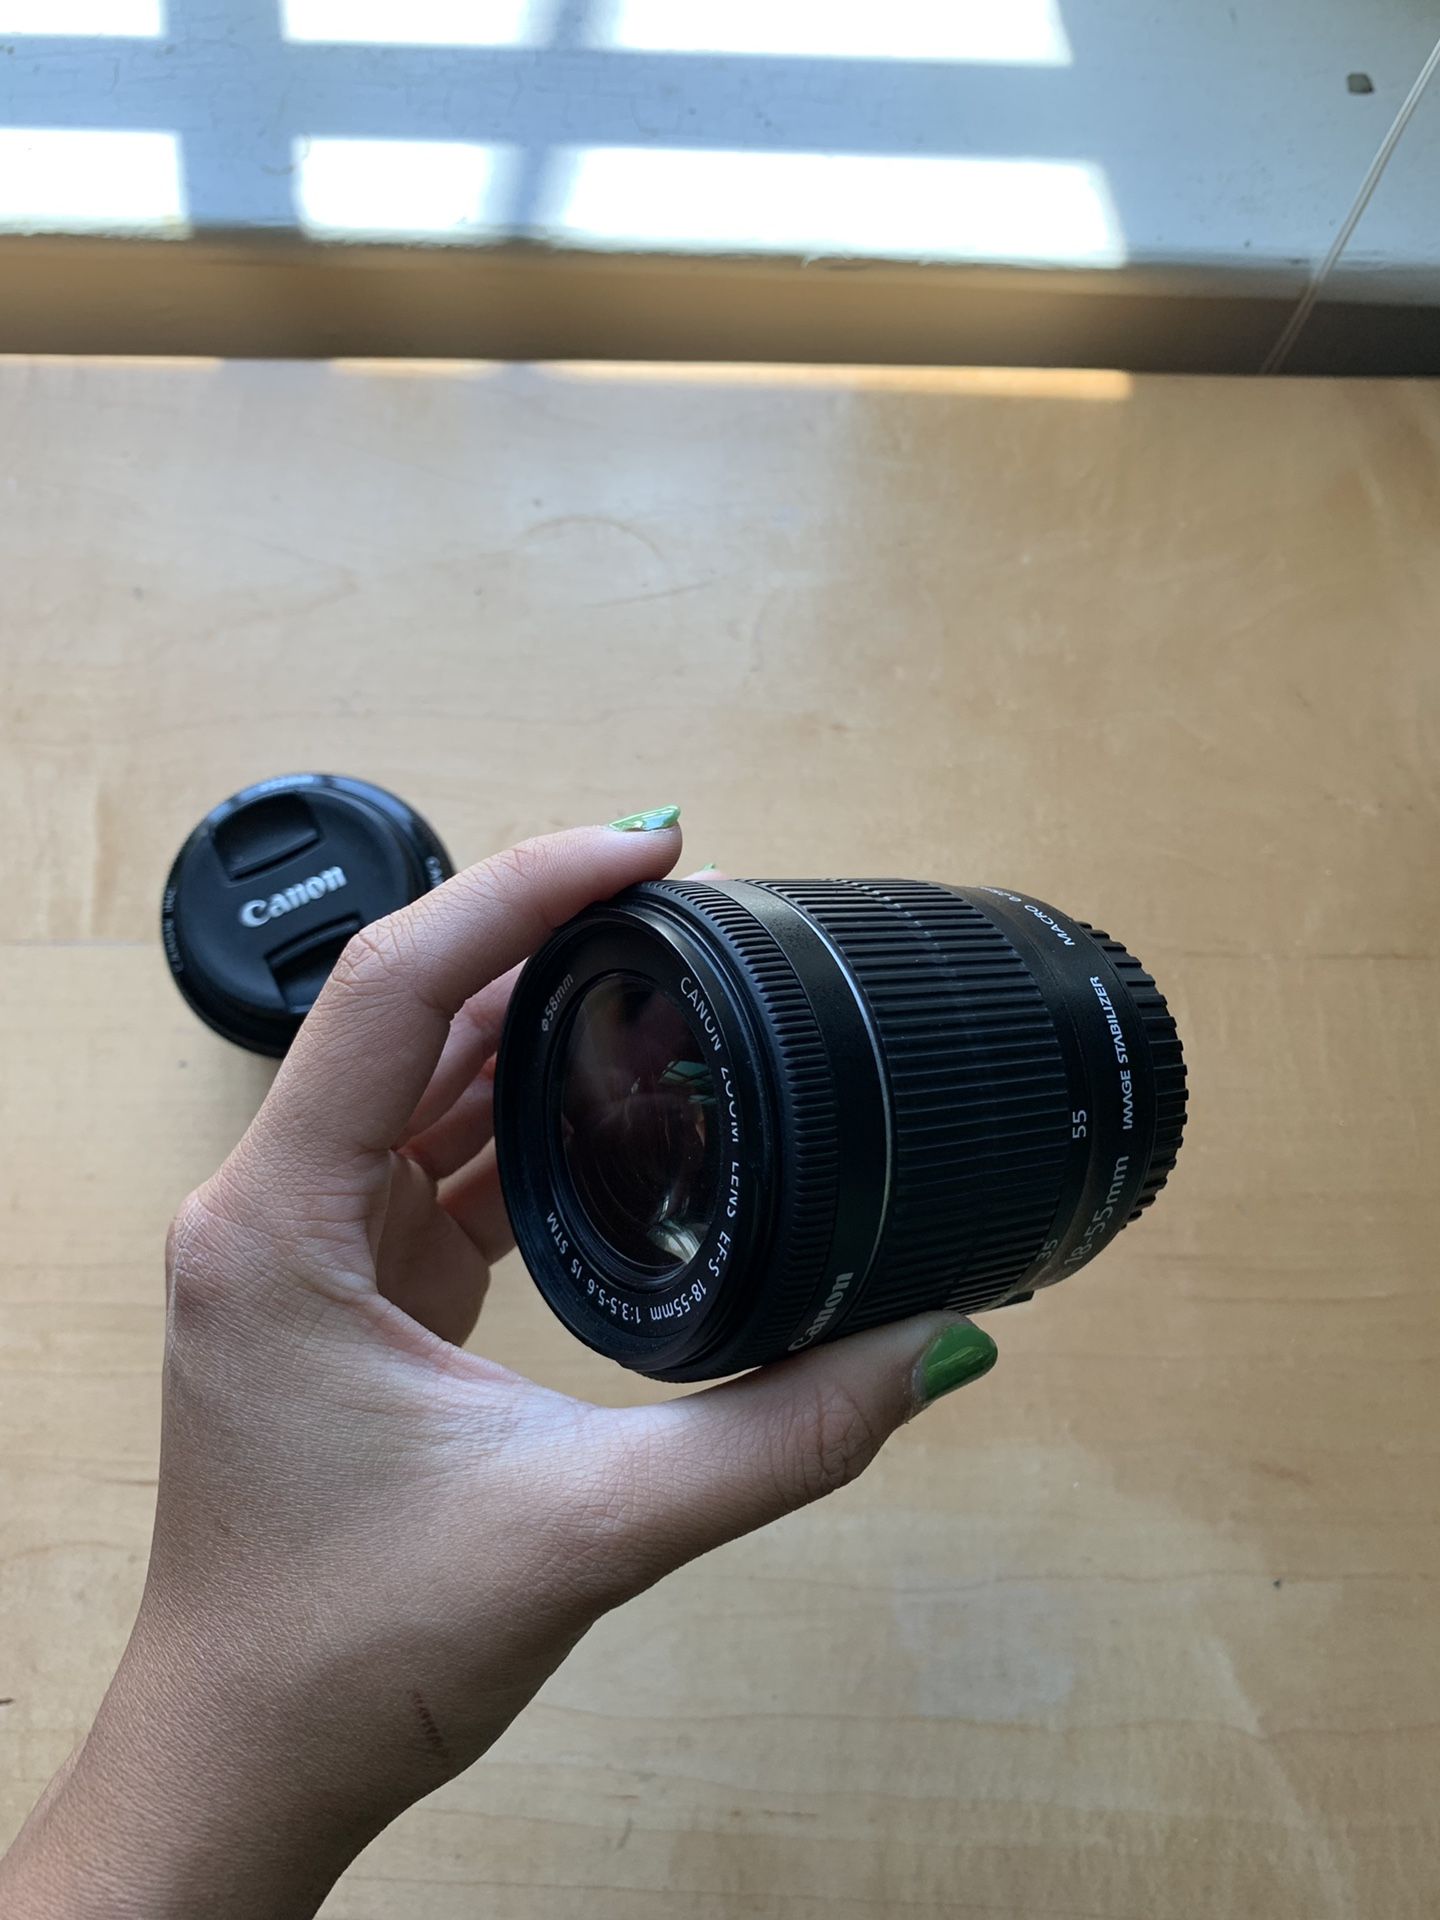 Canon lens DSLR standard 18-55 mm and 50mm 1.8 lens.